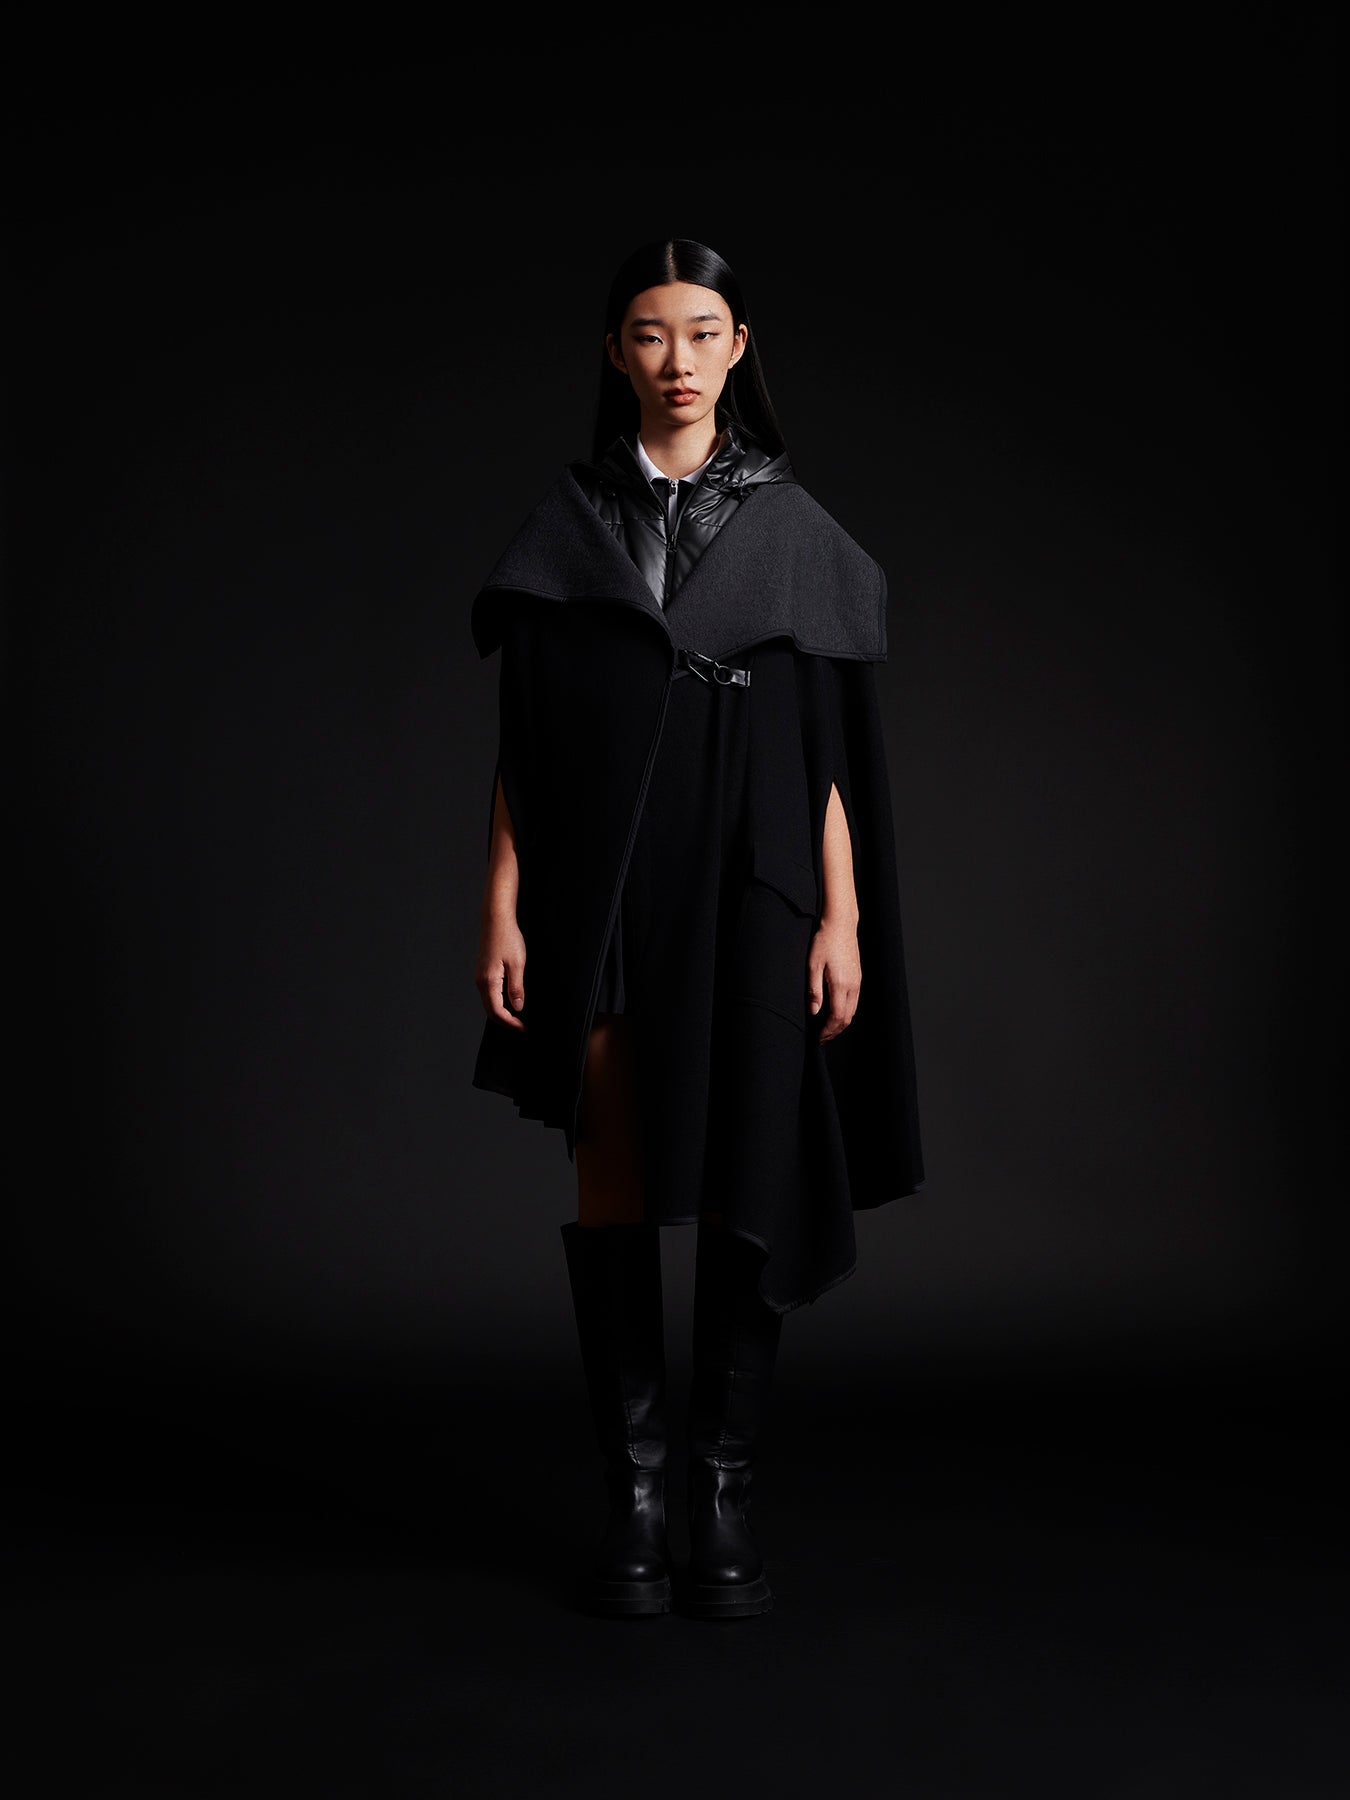 model wear black cape